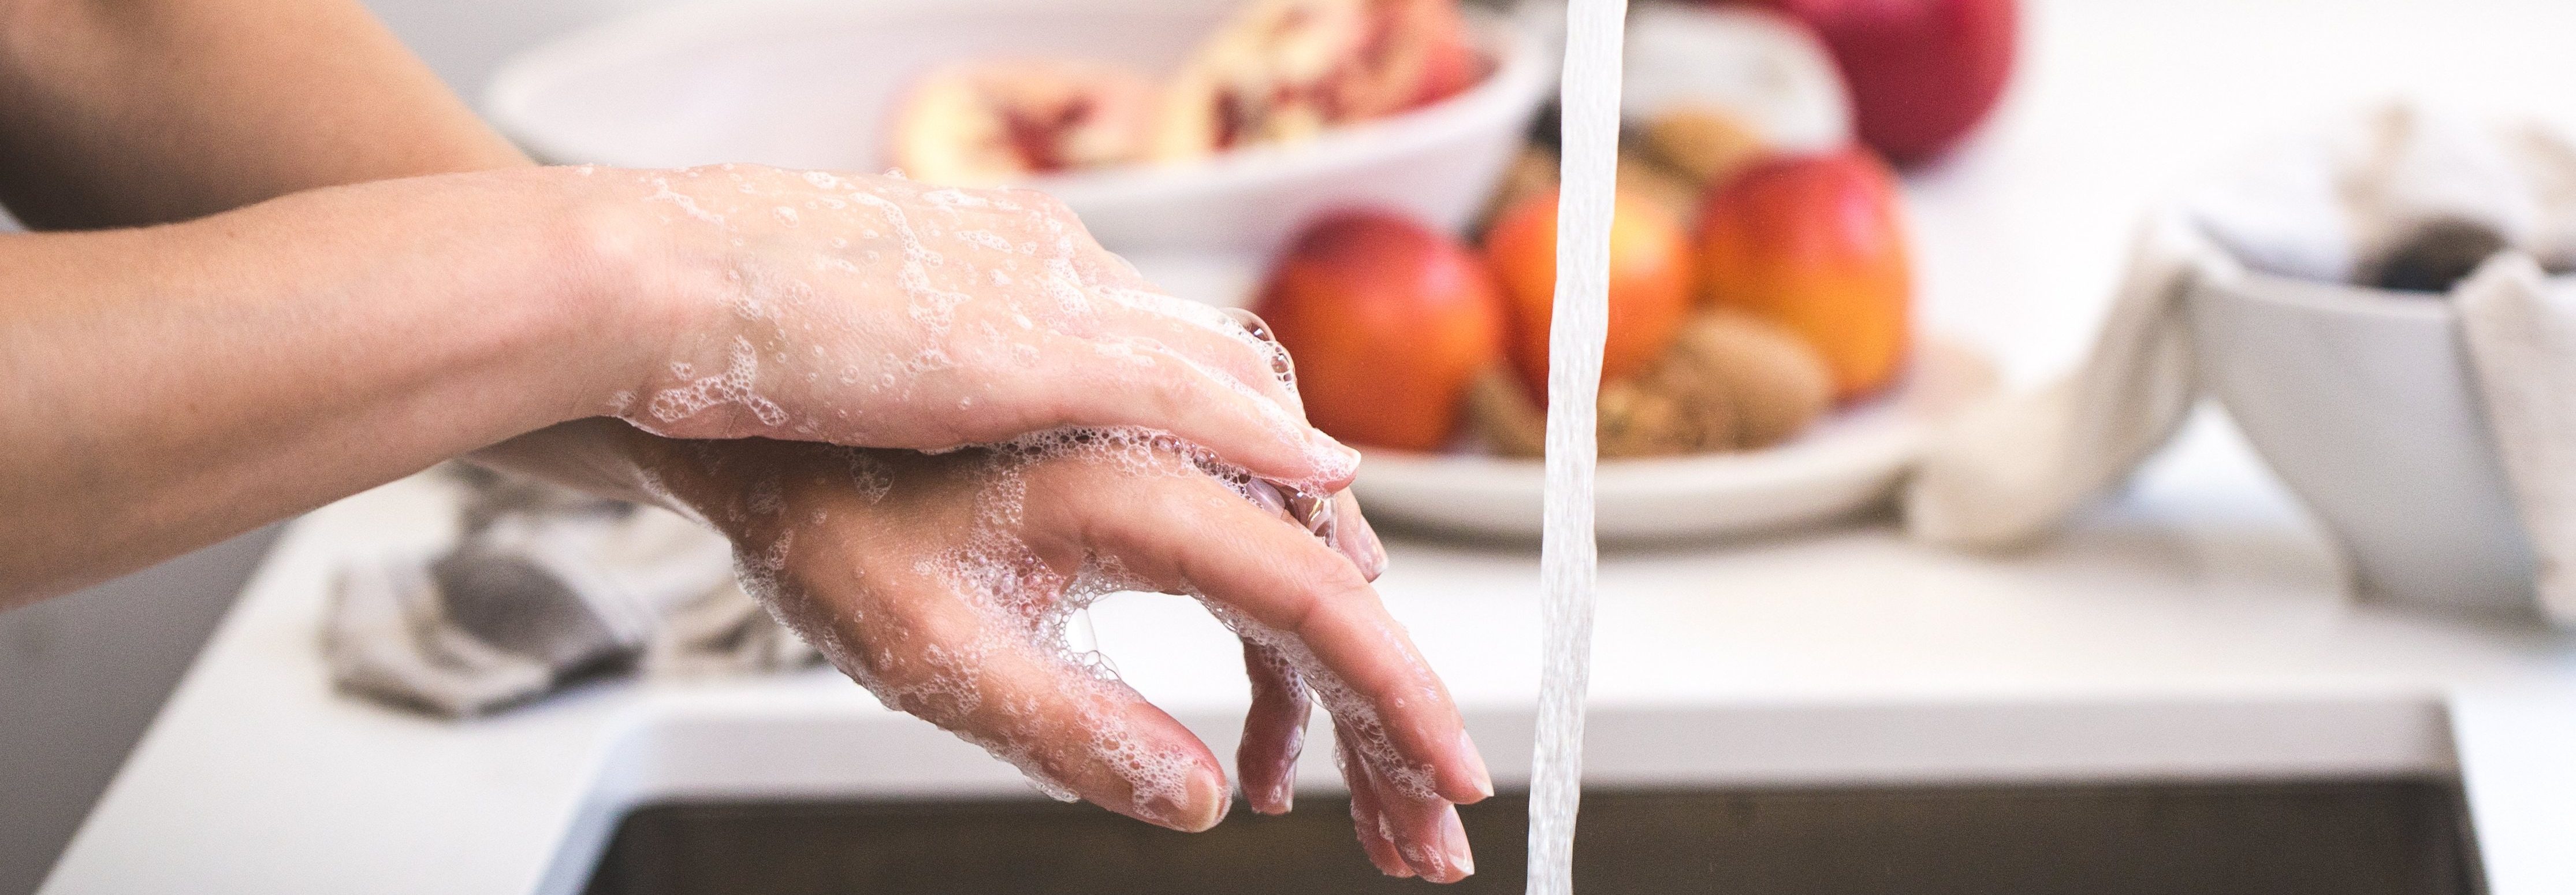 Руки после ванны. Мытье овощей. Мытье овощей фото. Распарил руки после ванны. Картинка ежедневно мыть овощи и фрукты.